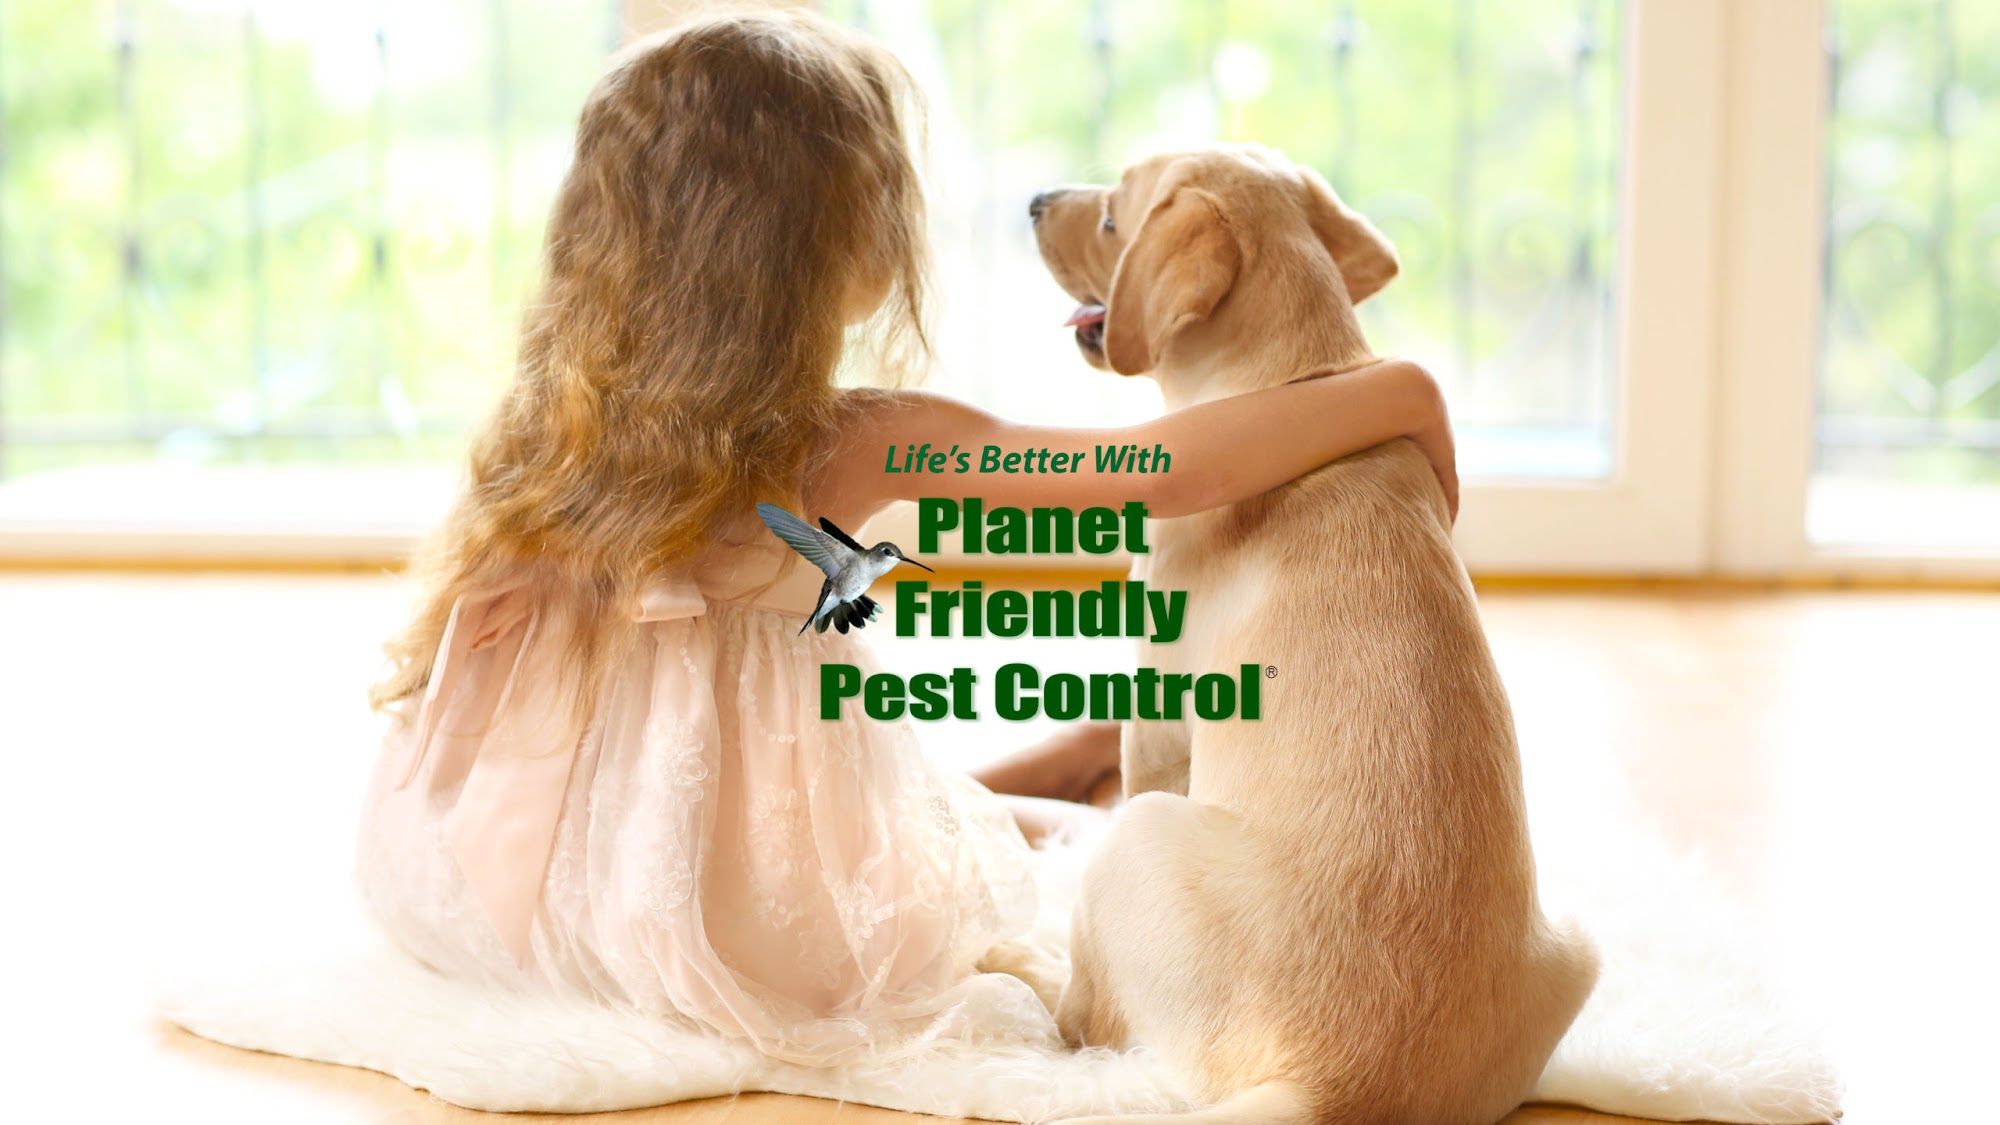 Planet Friendly Pest Control